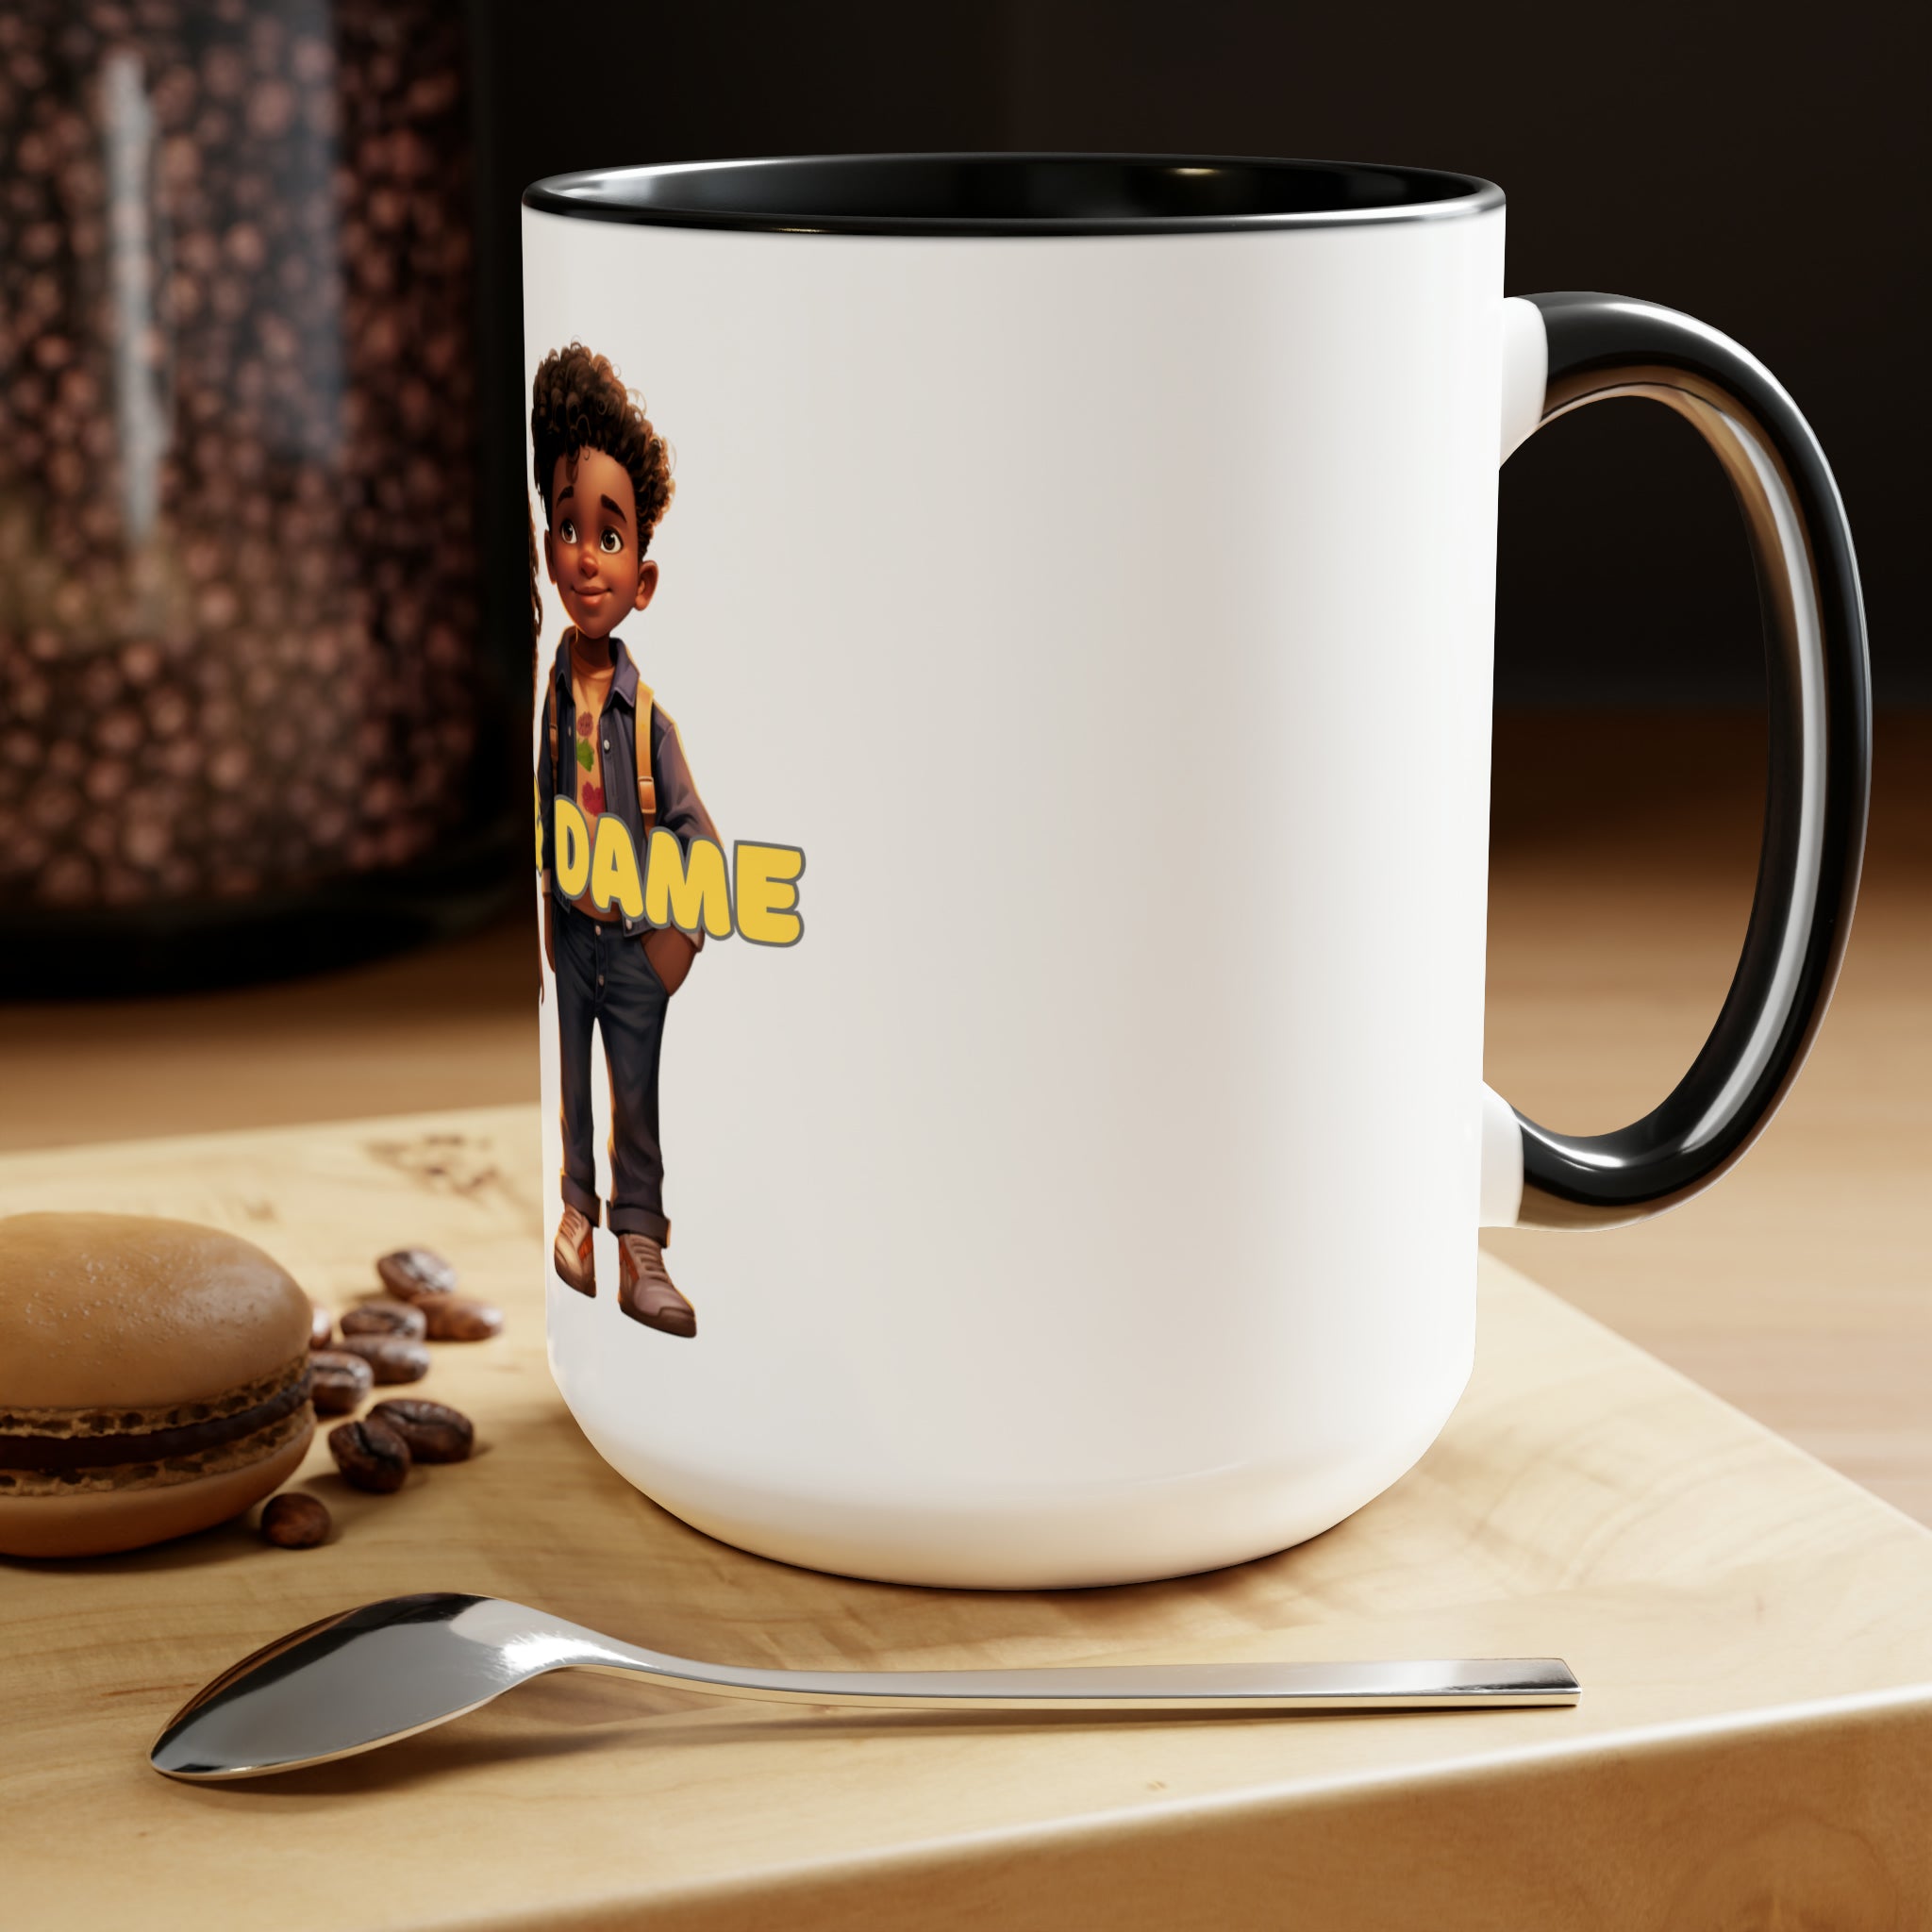 Nick & Dame Two-Tone Coffee Mugs, 15oz